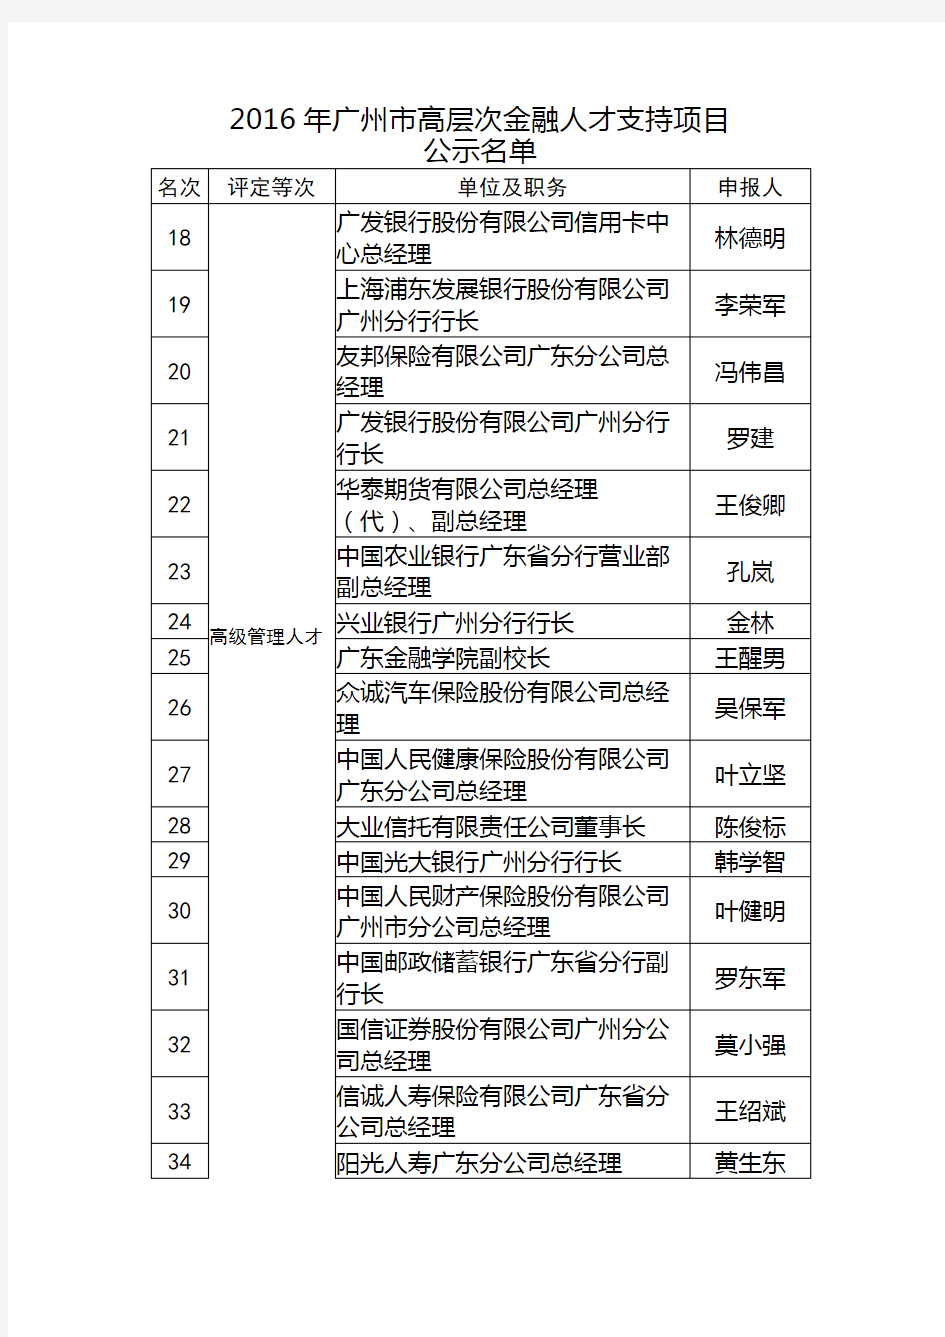 1.2016年广州市高层次金融人才支持项目公示名单 ... - 广州市金融工作局